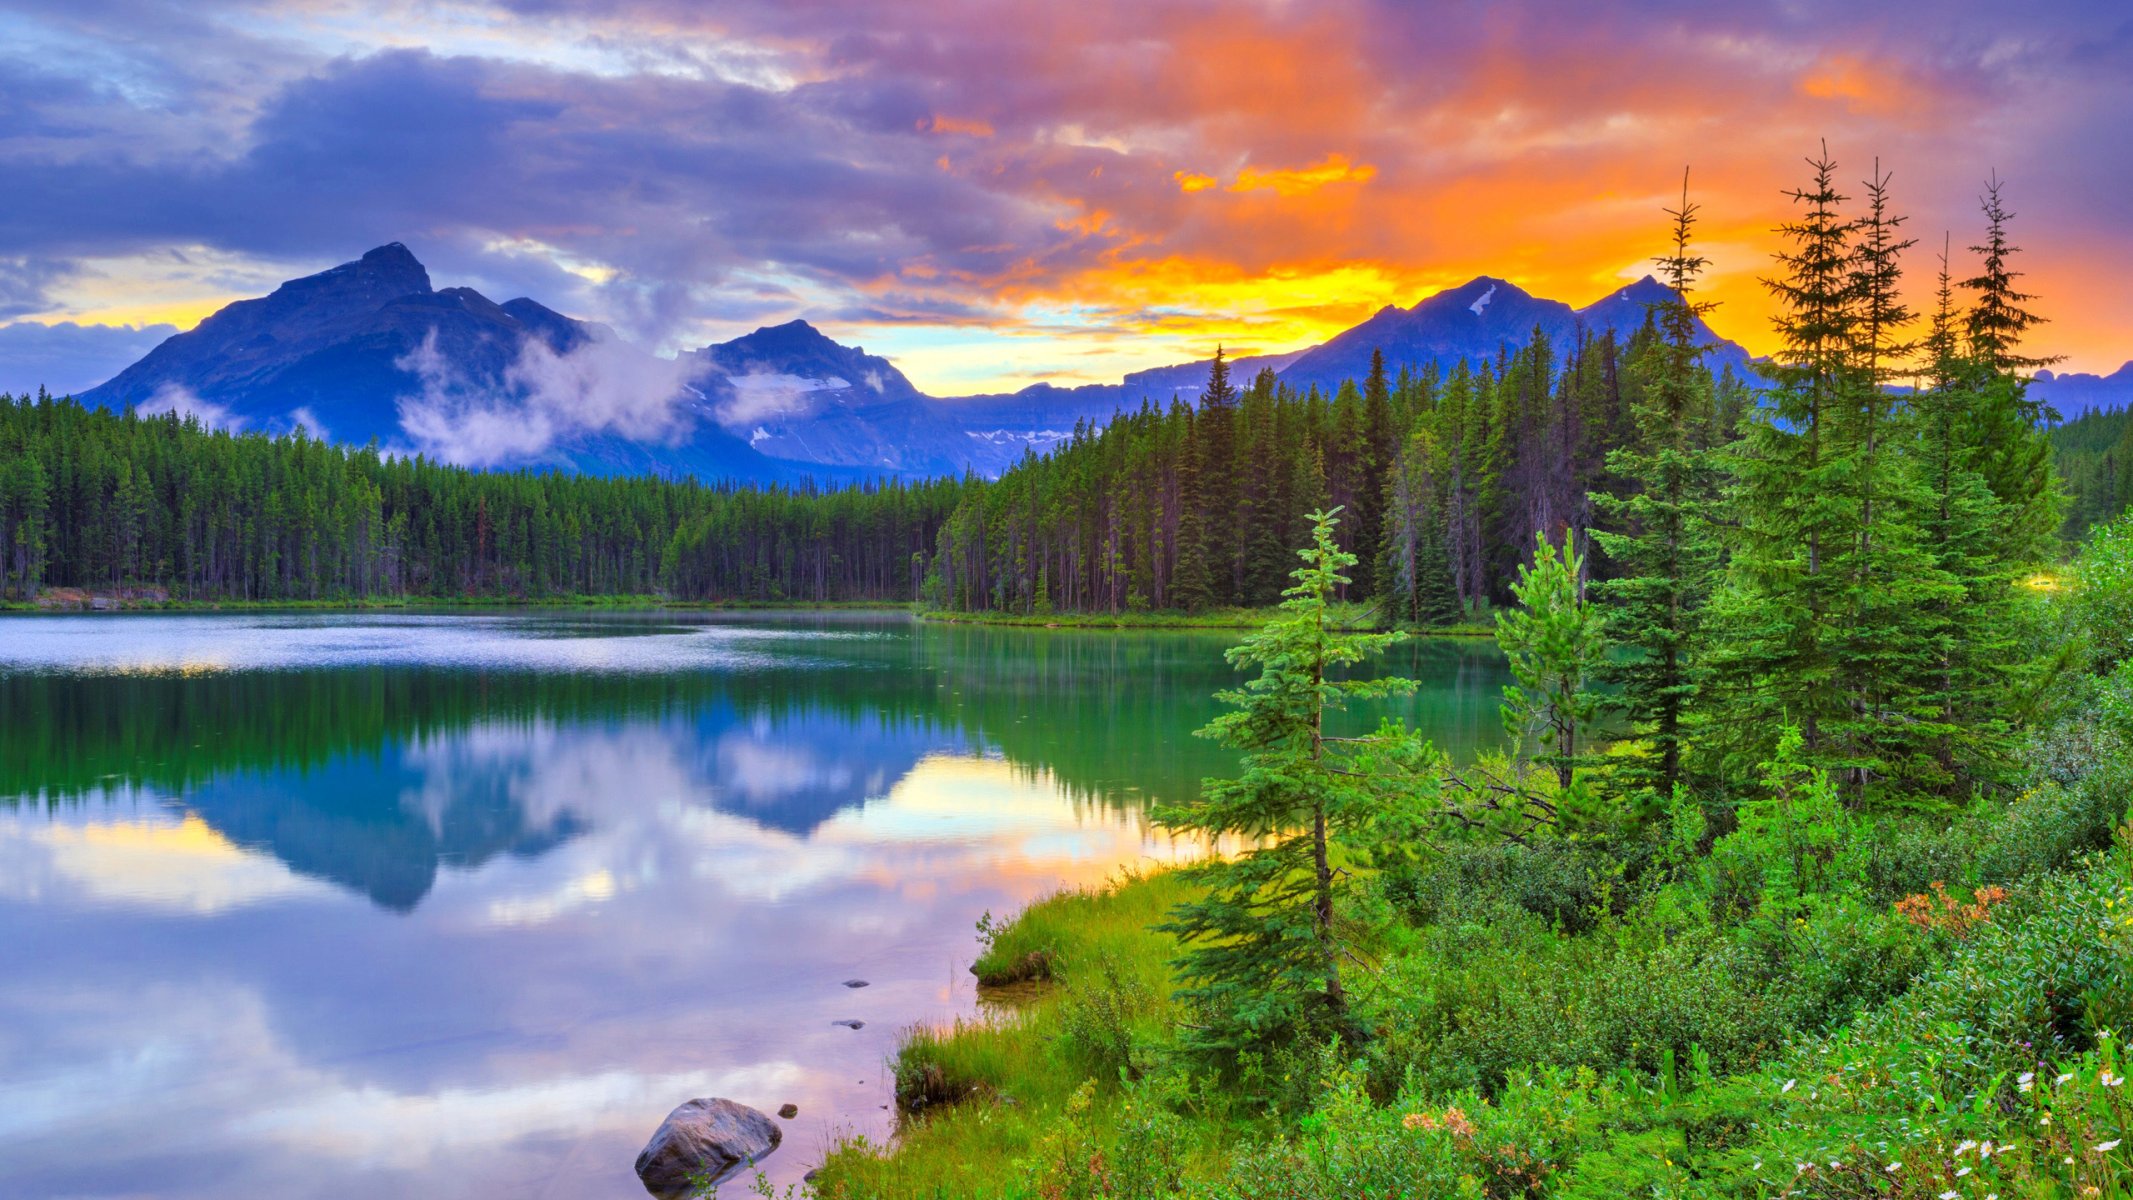 jezioro herberta park narodowy banff alberta kanada niebo chmury zachód słońca góry jezioro drzewa